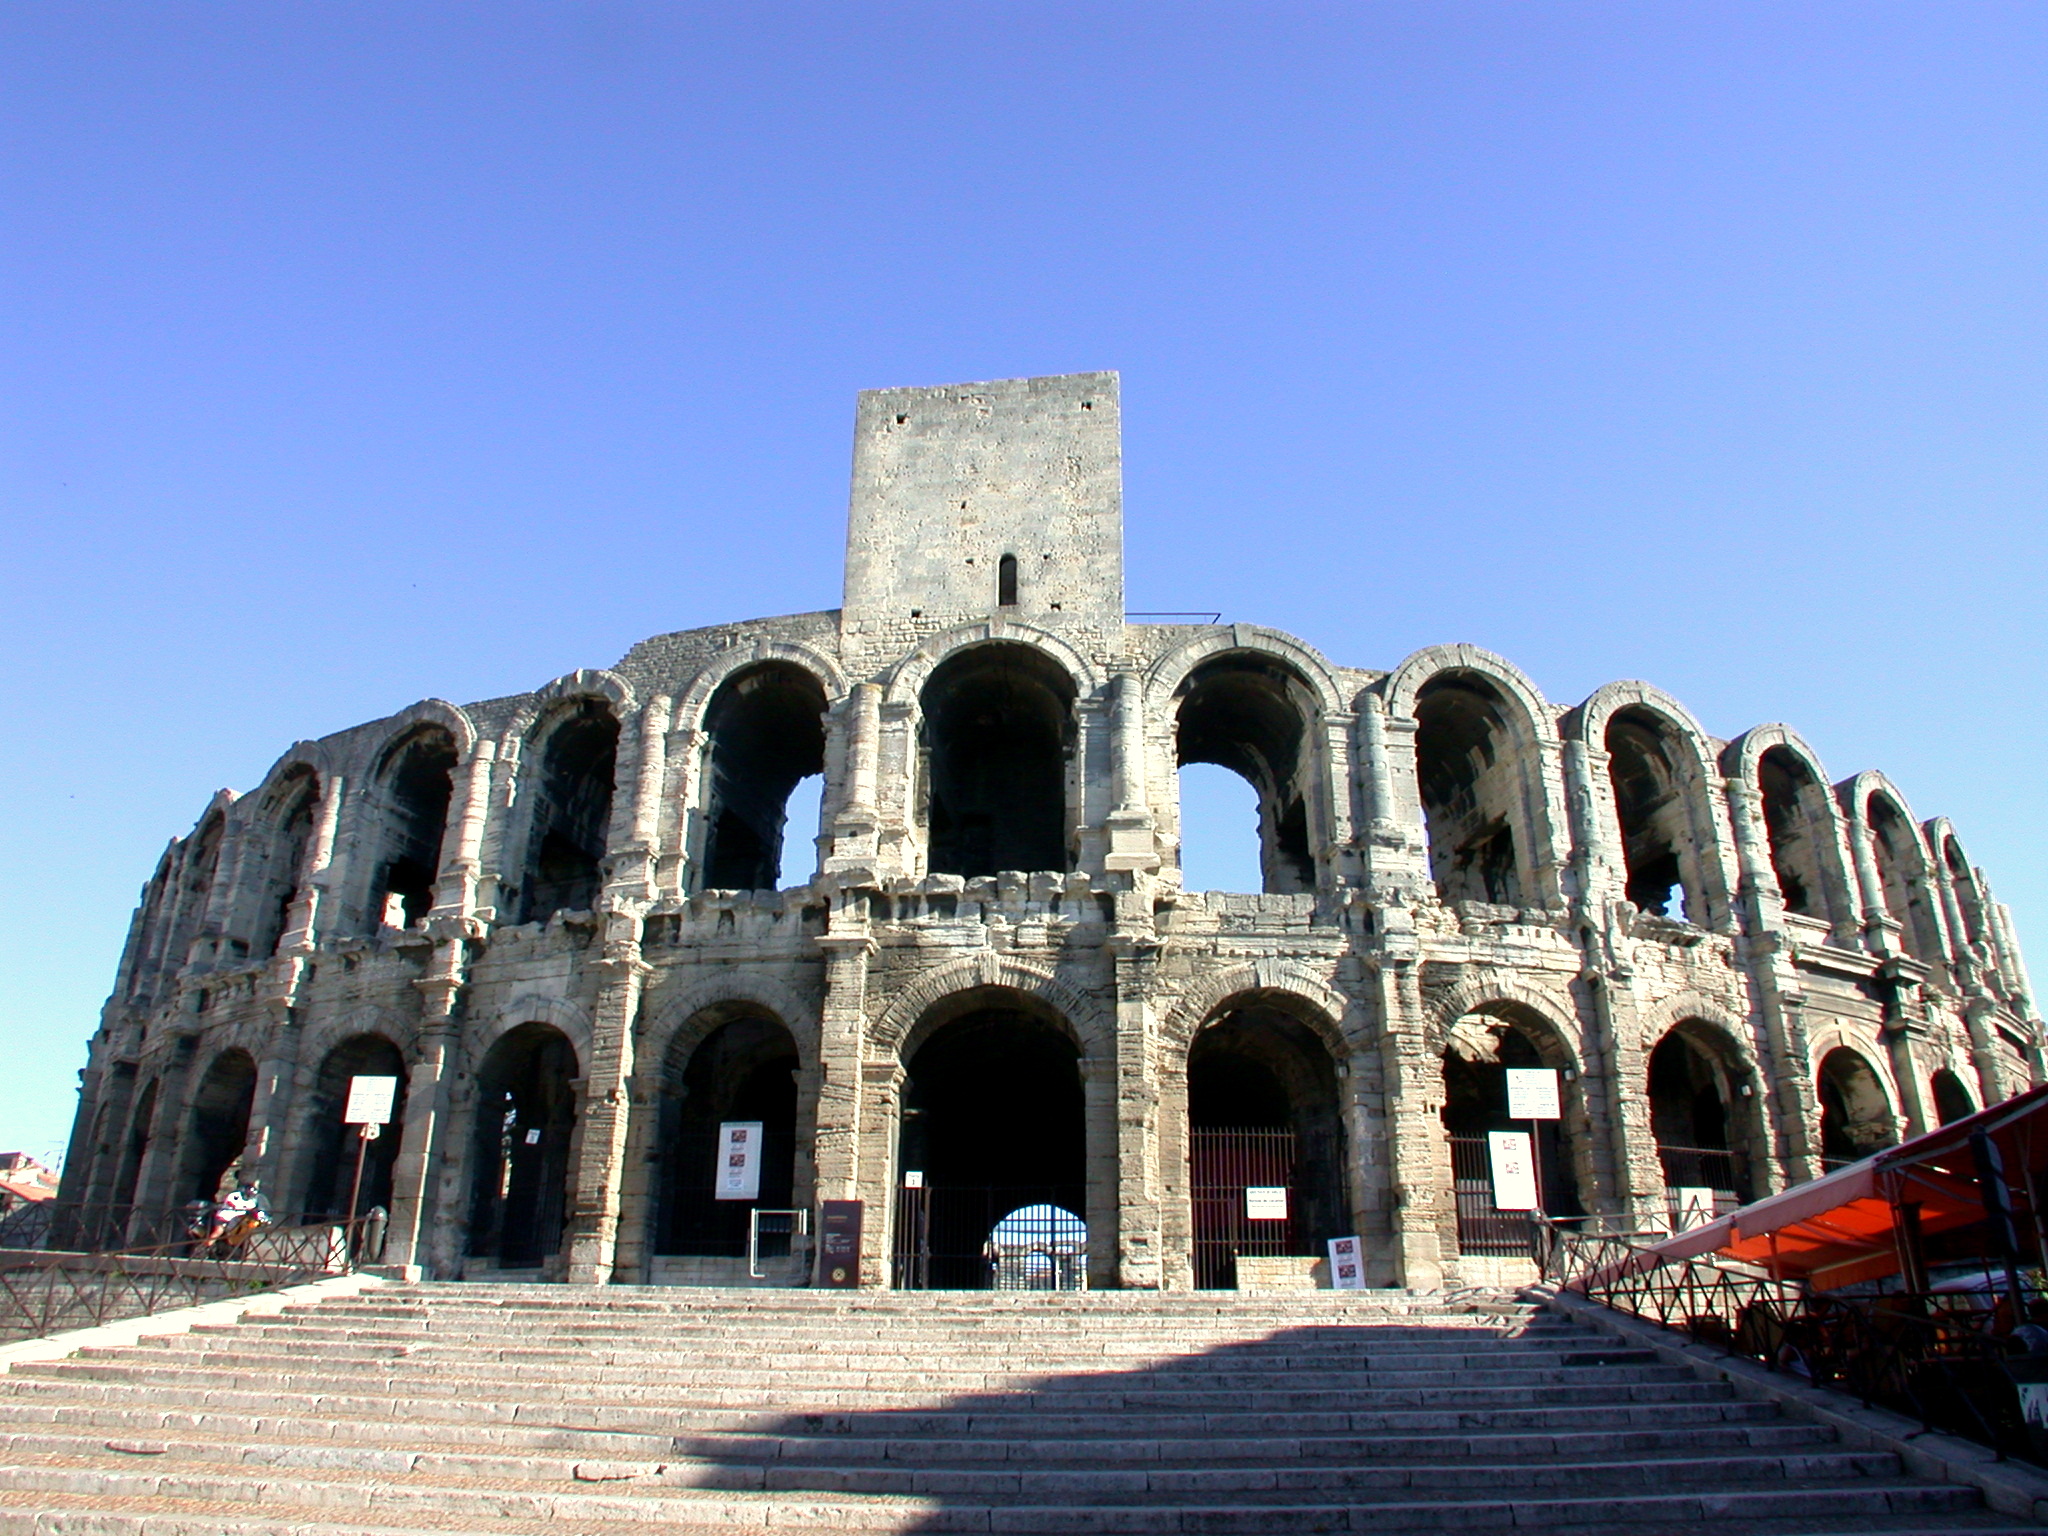 Amphitheatre of Arles - Public Domain